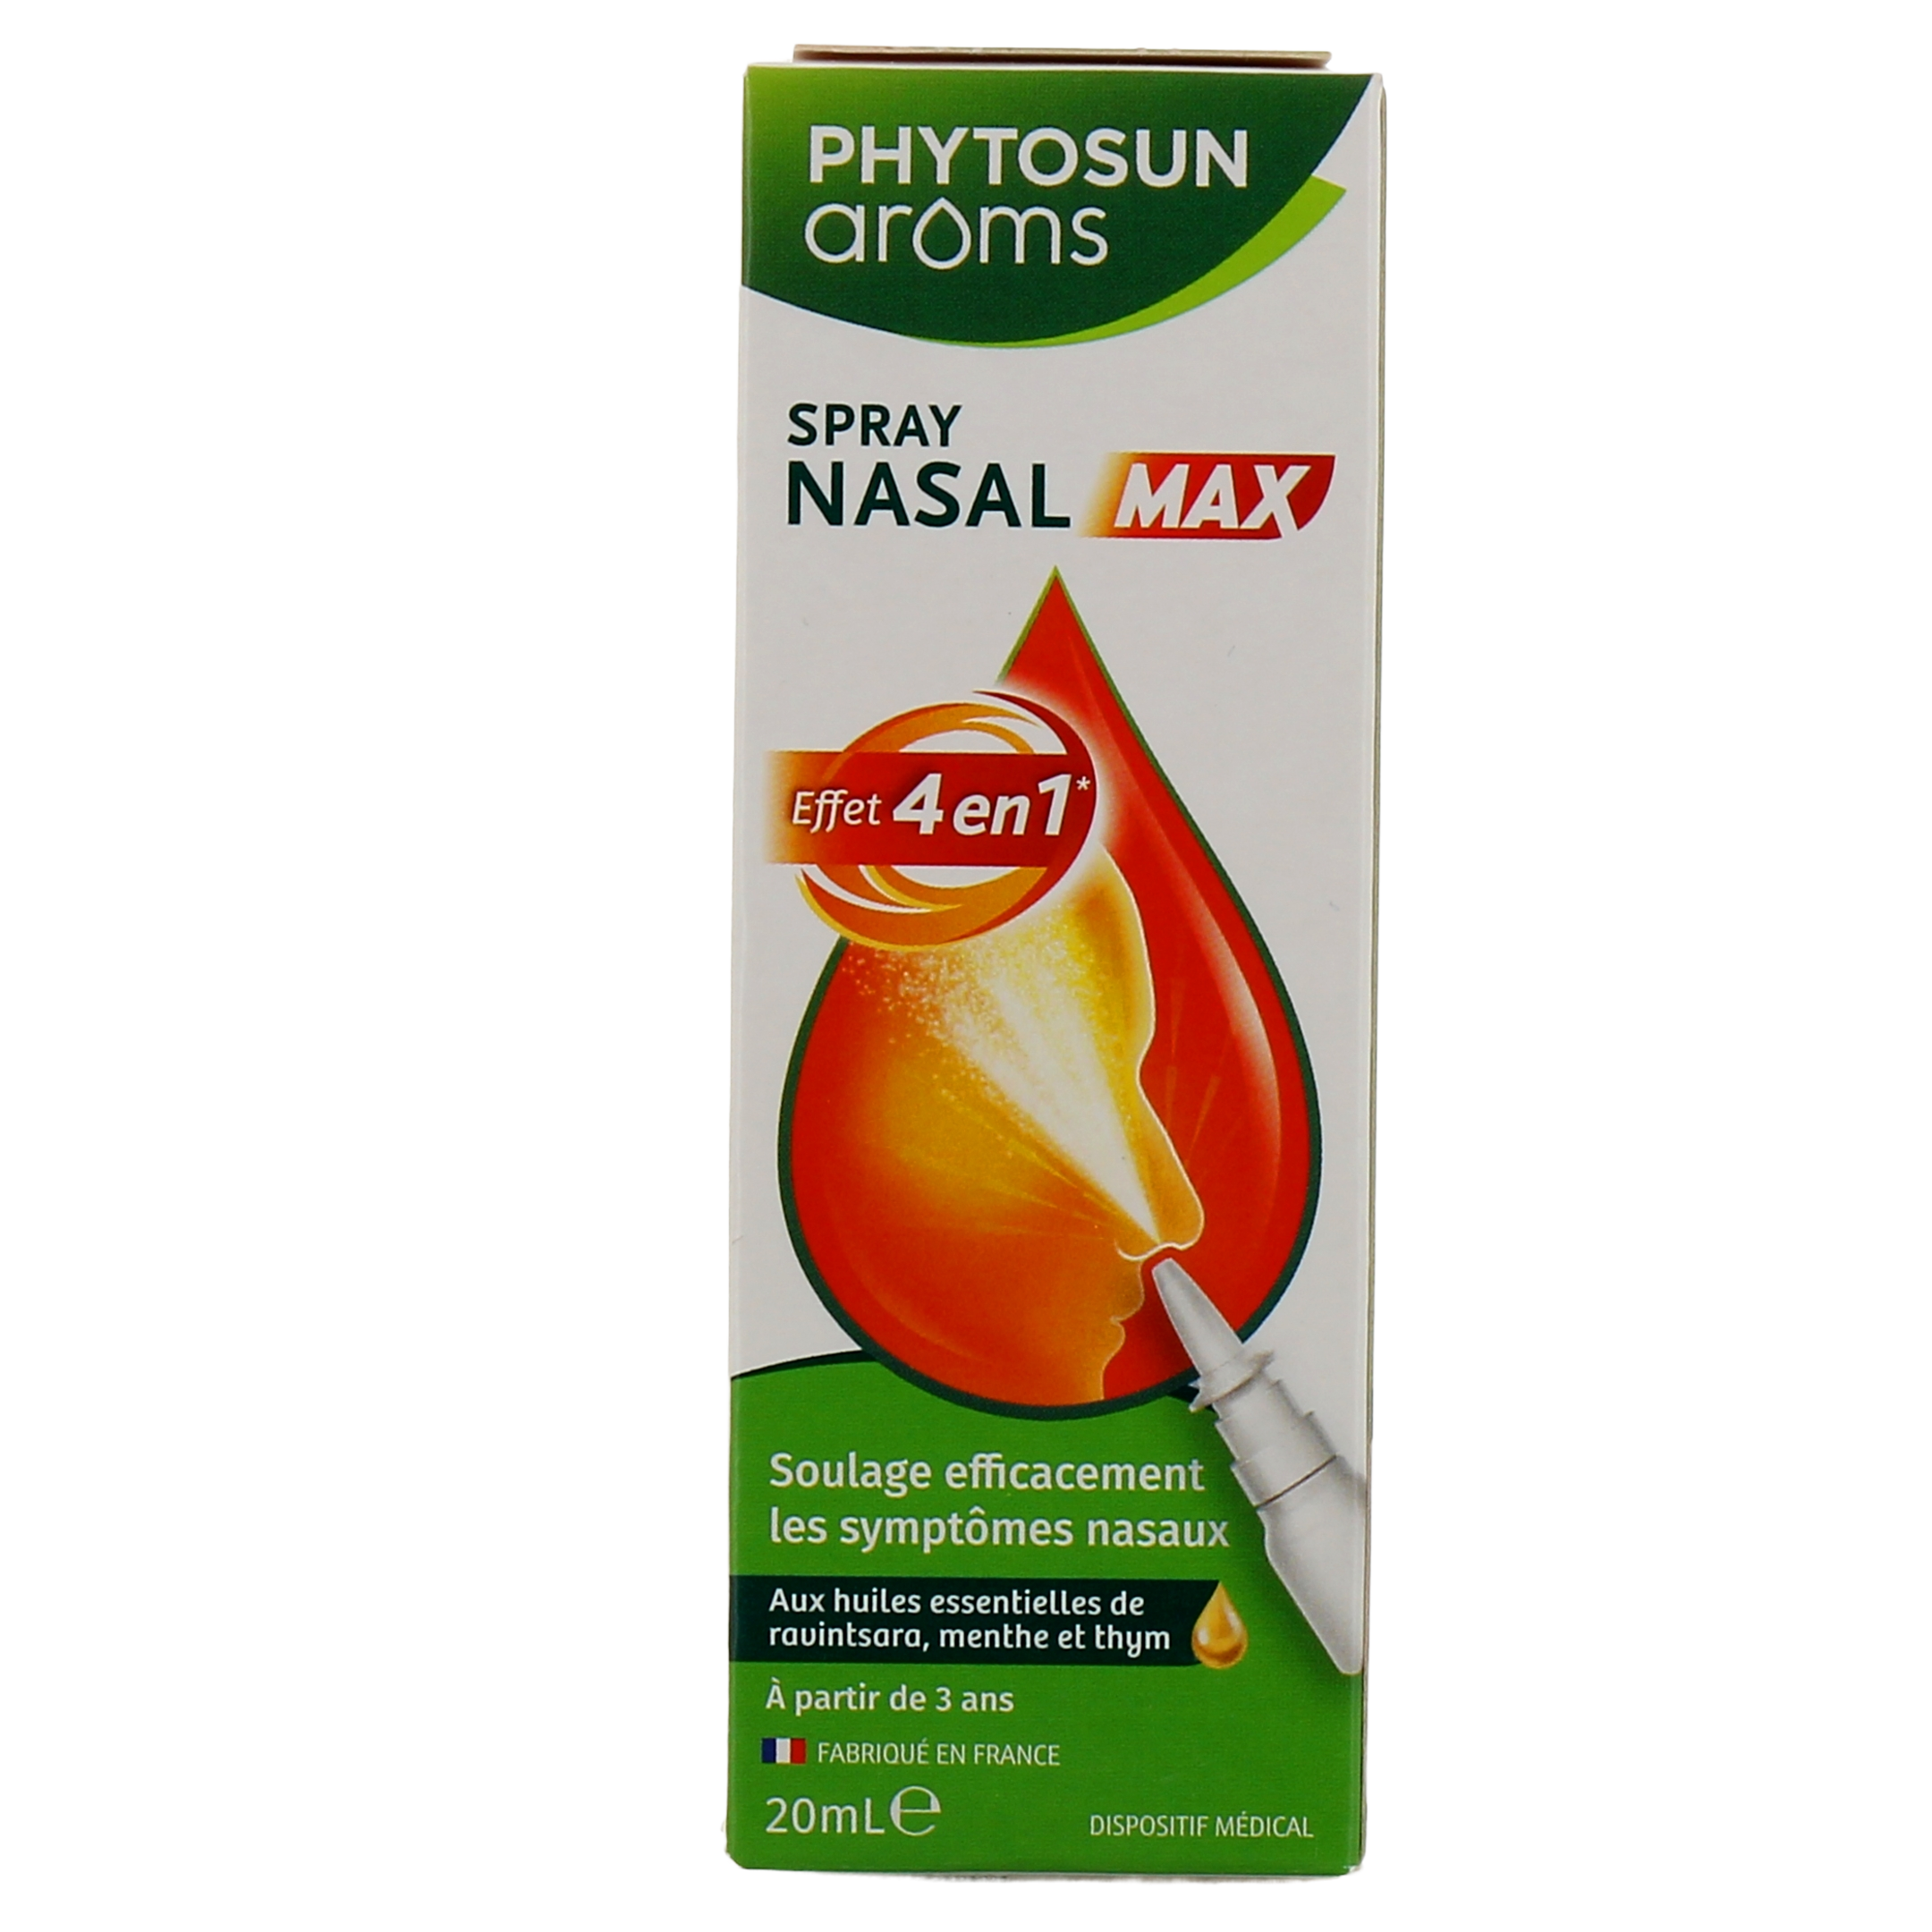 Phytosun Arôms spray nasal Max - Effet 4 en 1 sur le Rhume